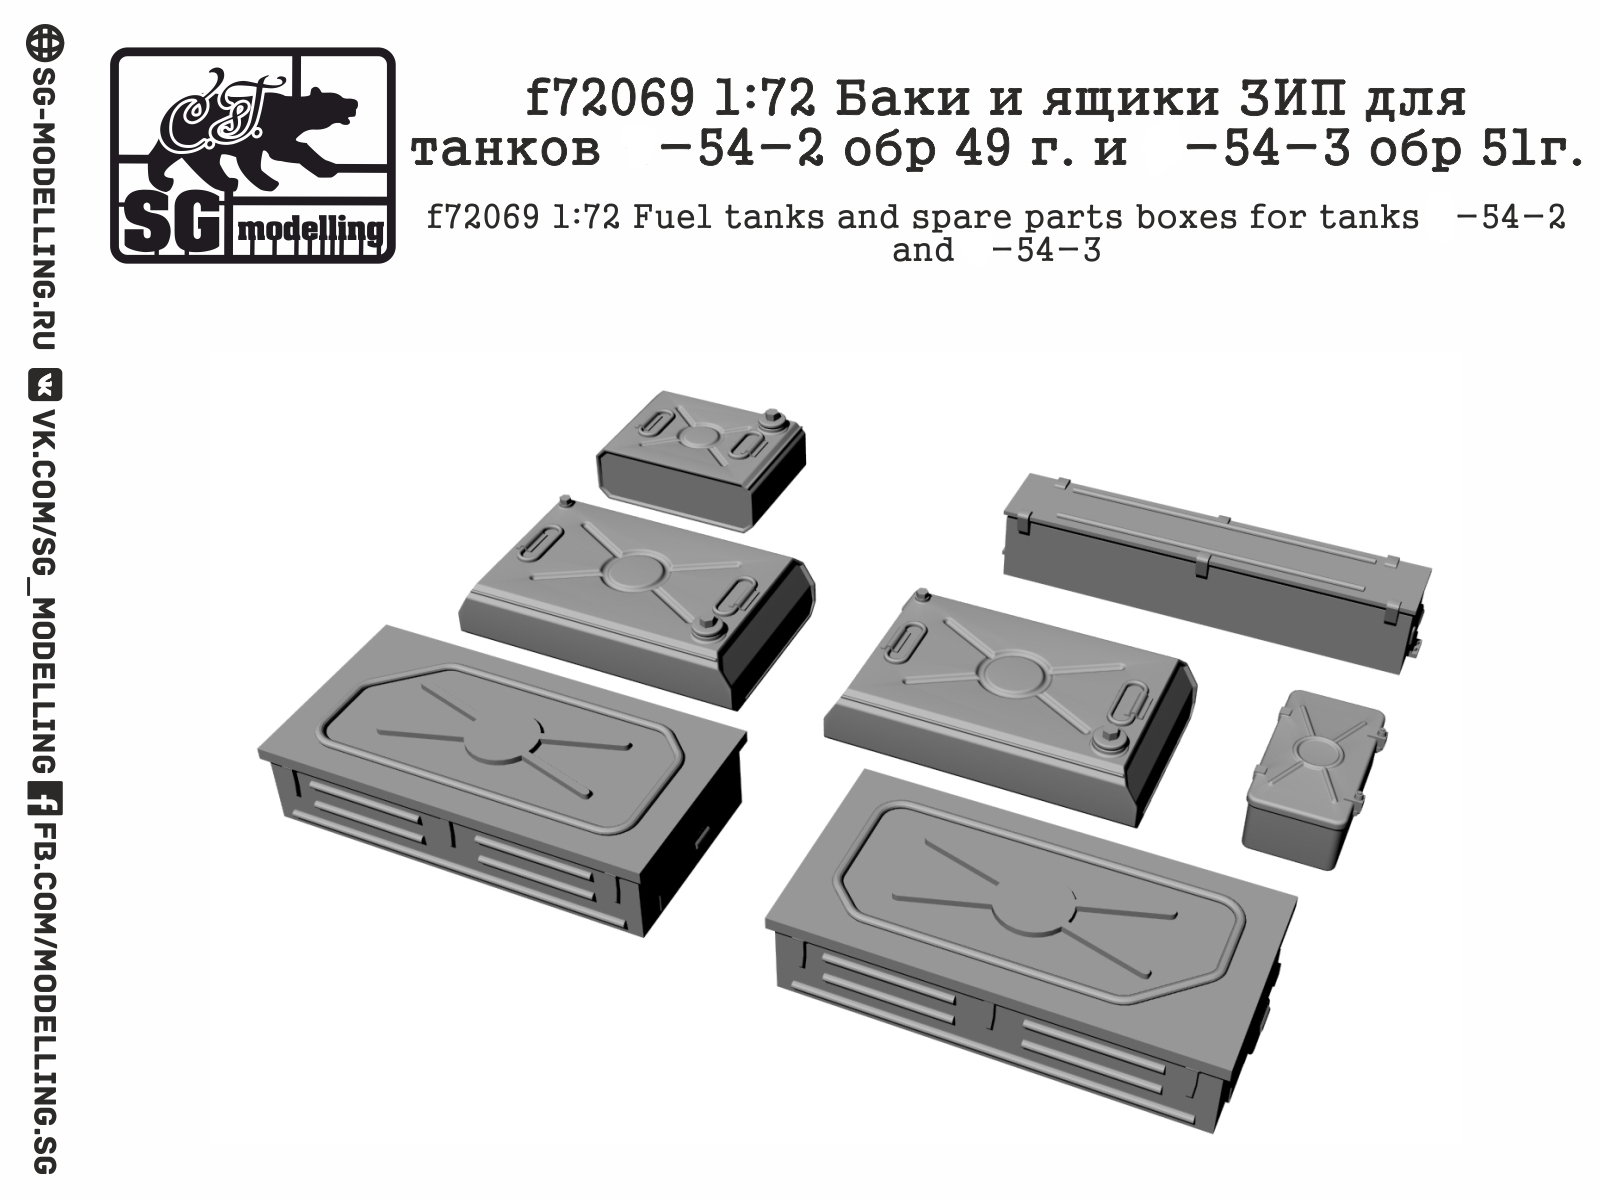 f72069  дополнения из смолы  Баки и ящики ЗИП для танков Танк-54 обр.1949 и 51г.  (1:72)